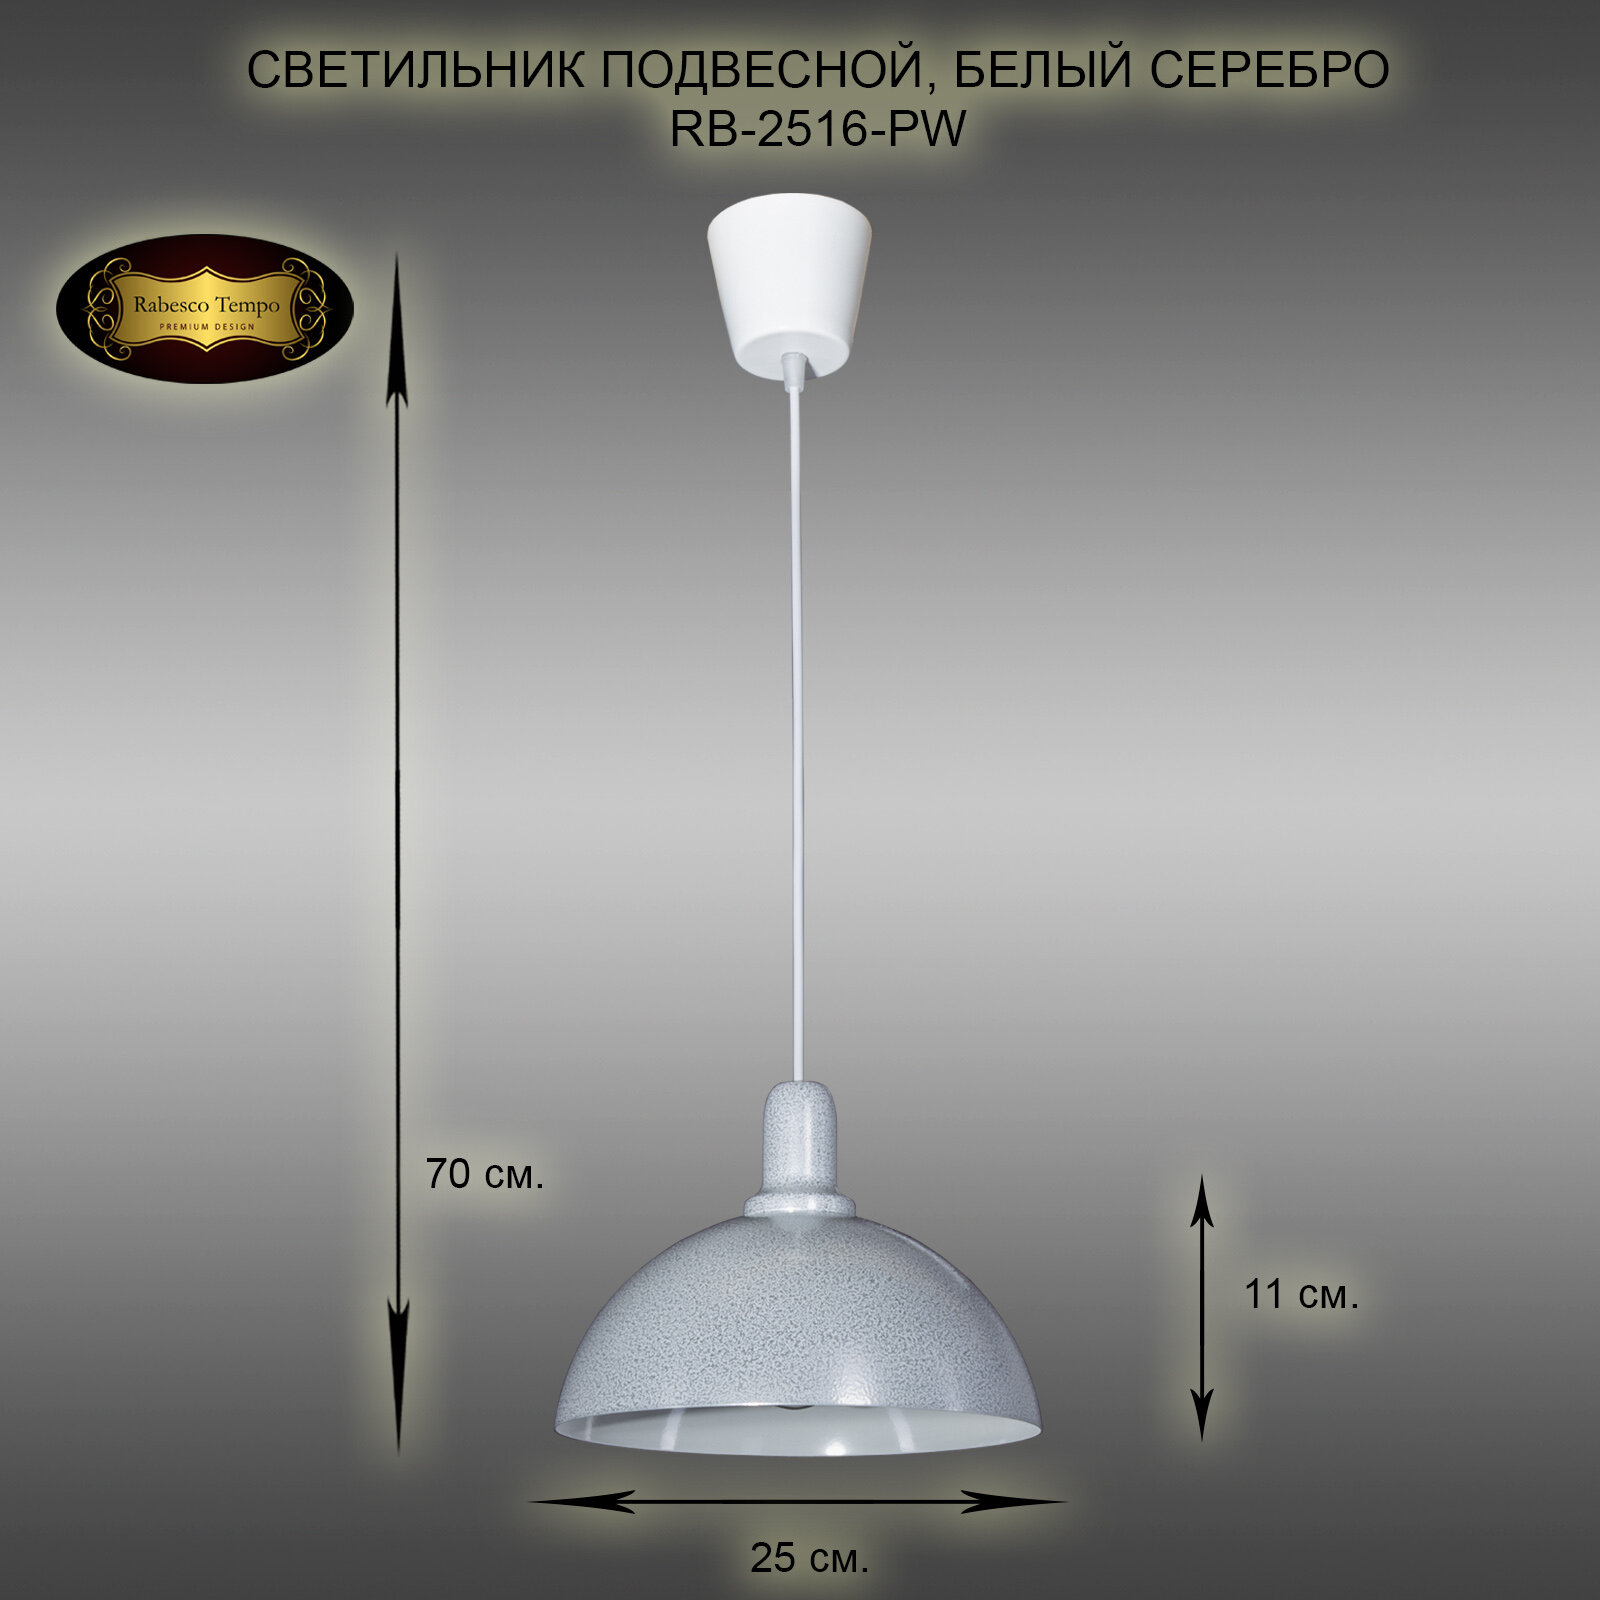 Подвесной светильник, люстра подвесная Rabesco. Арт. RB-2516/1-PW, E27, 40 Вт. Цвет белый с серебром.